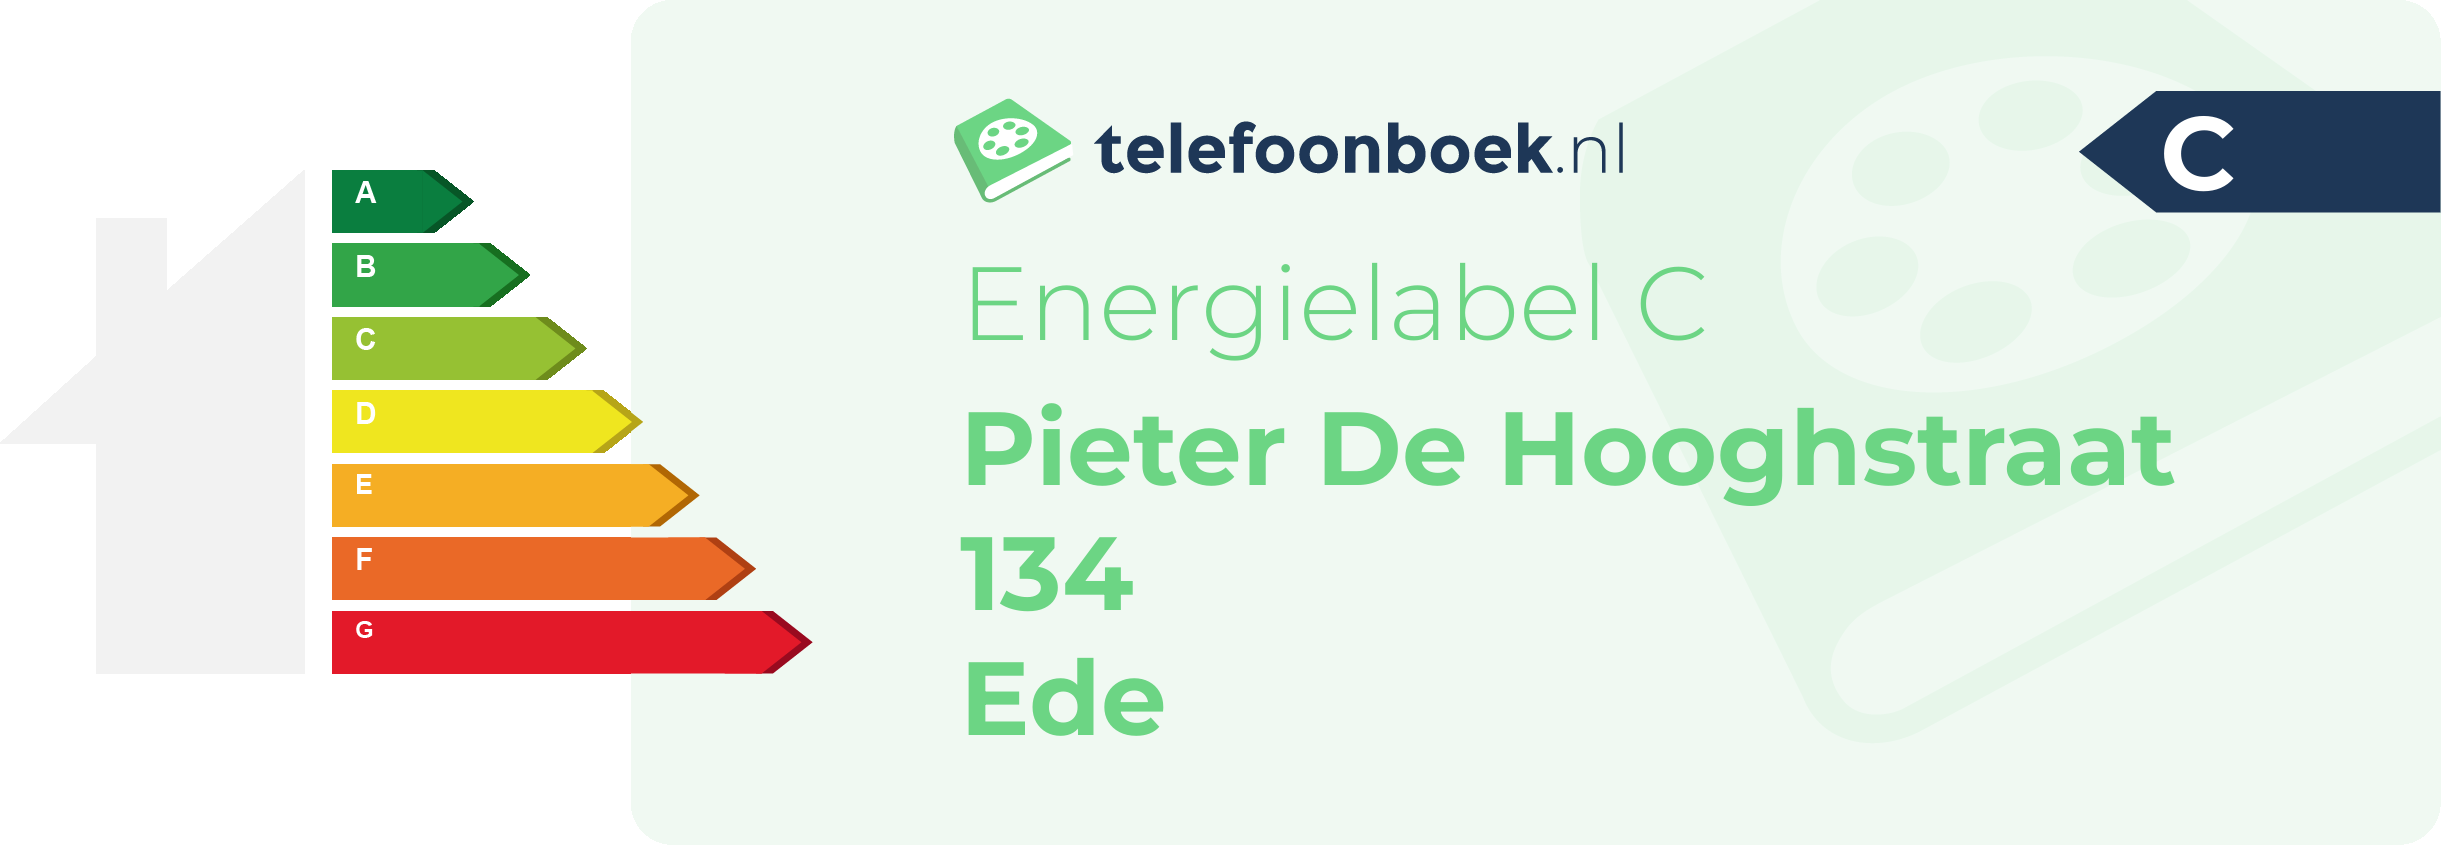 Energielabel Pieter De Hooghstraat 134 Ede